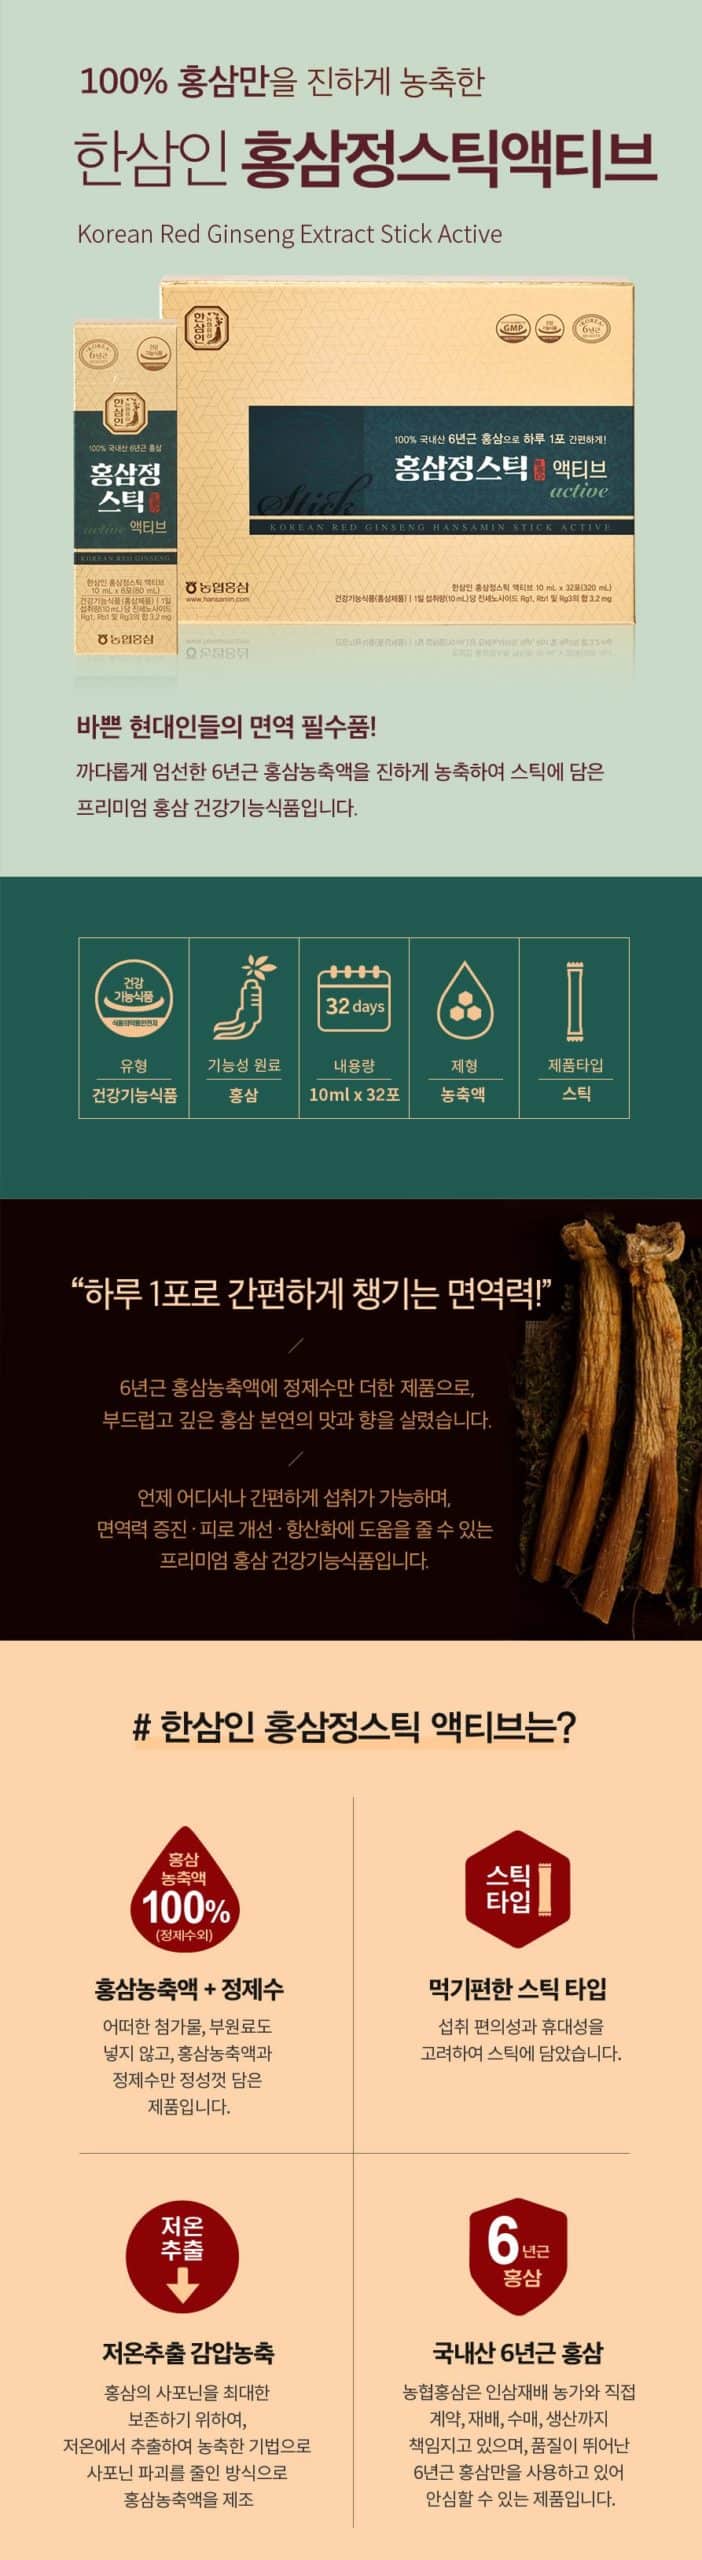 韓國食品-[한삼인] 홍삼정스틱 [엑티브] (10ml*32)